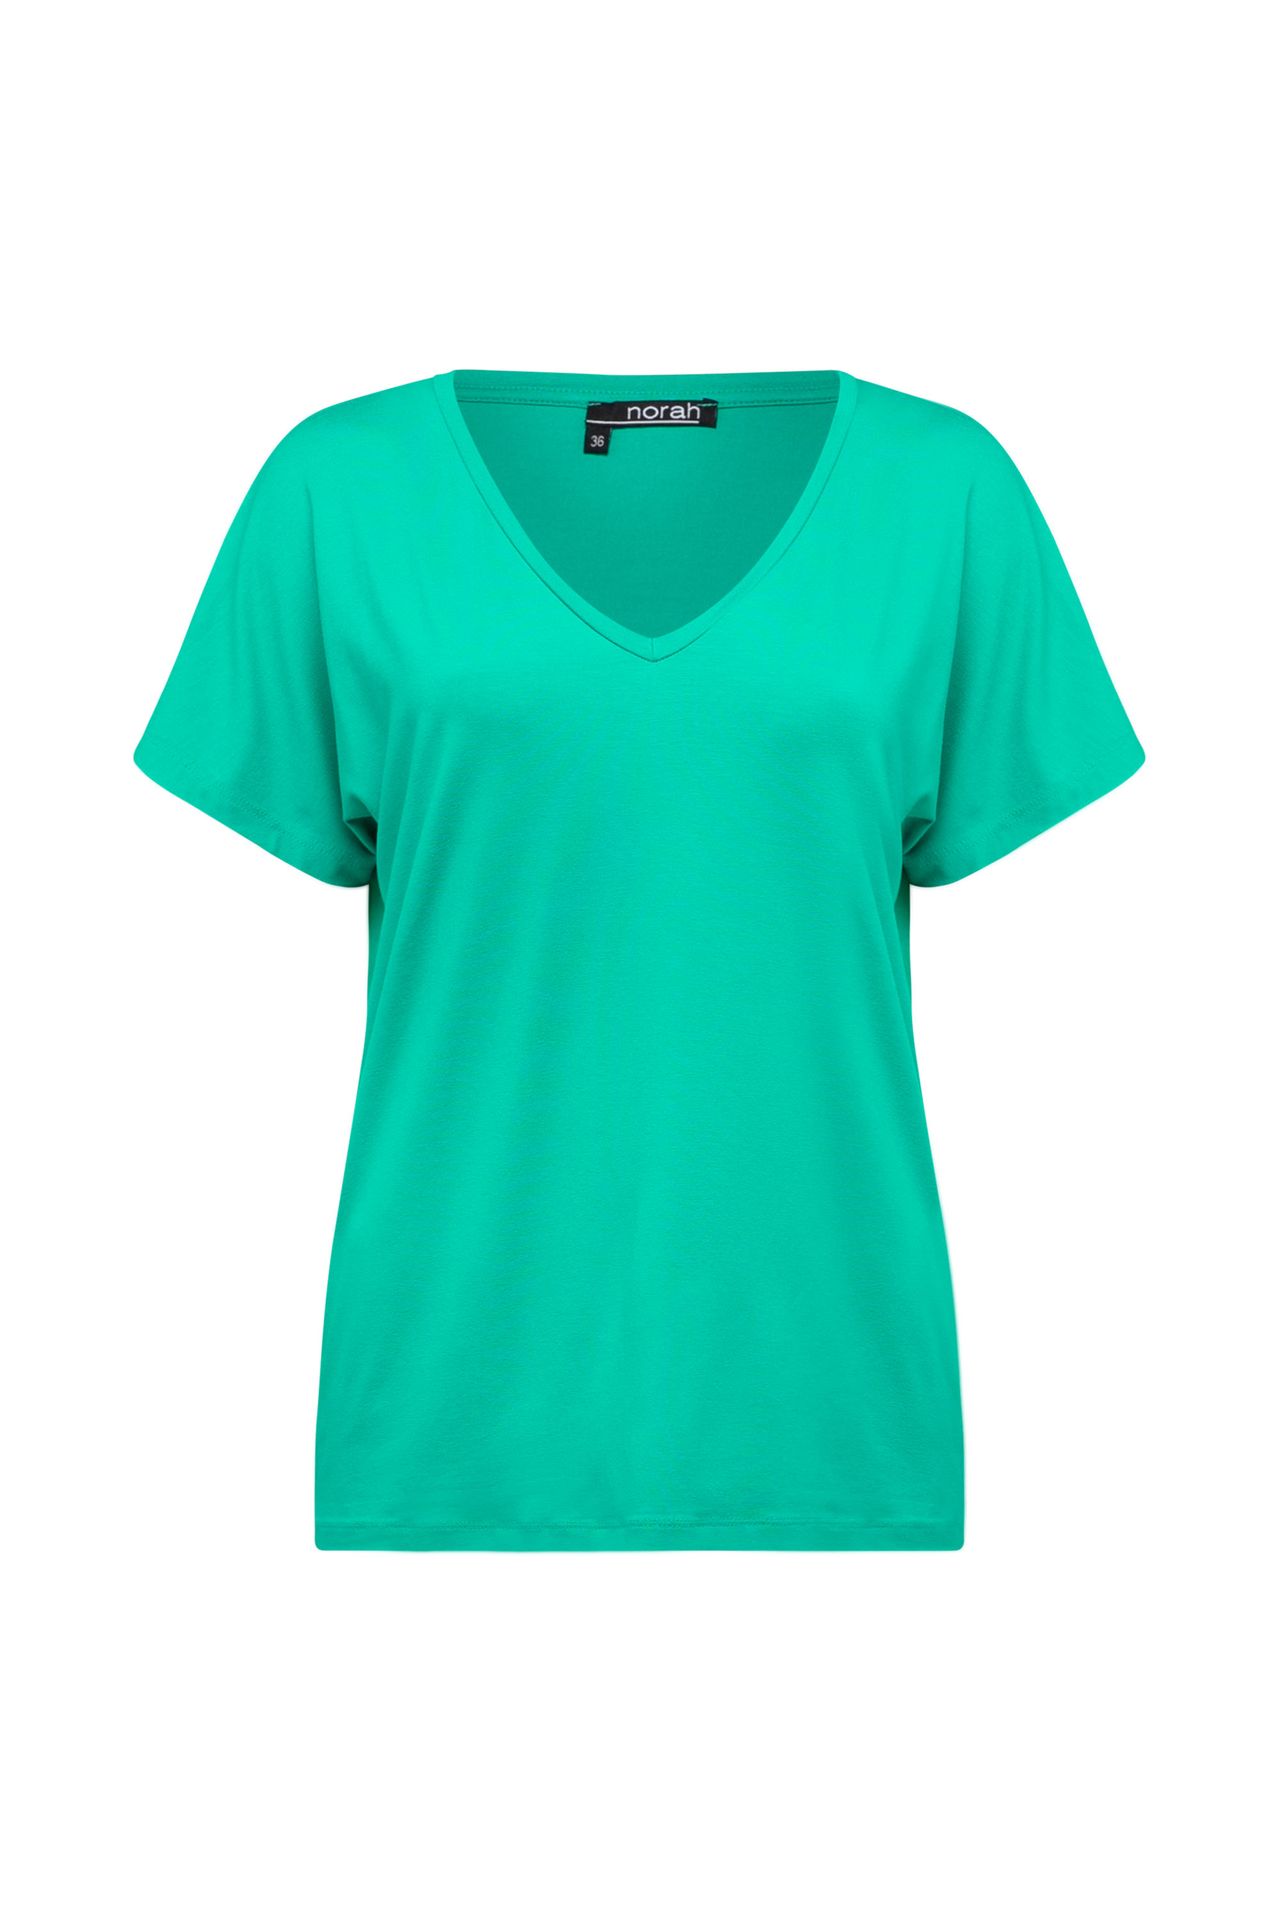 Norah Shirt Maral groen green 208968-500